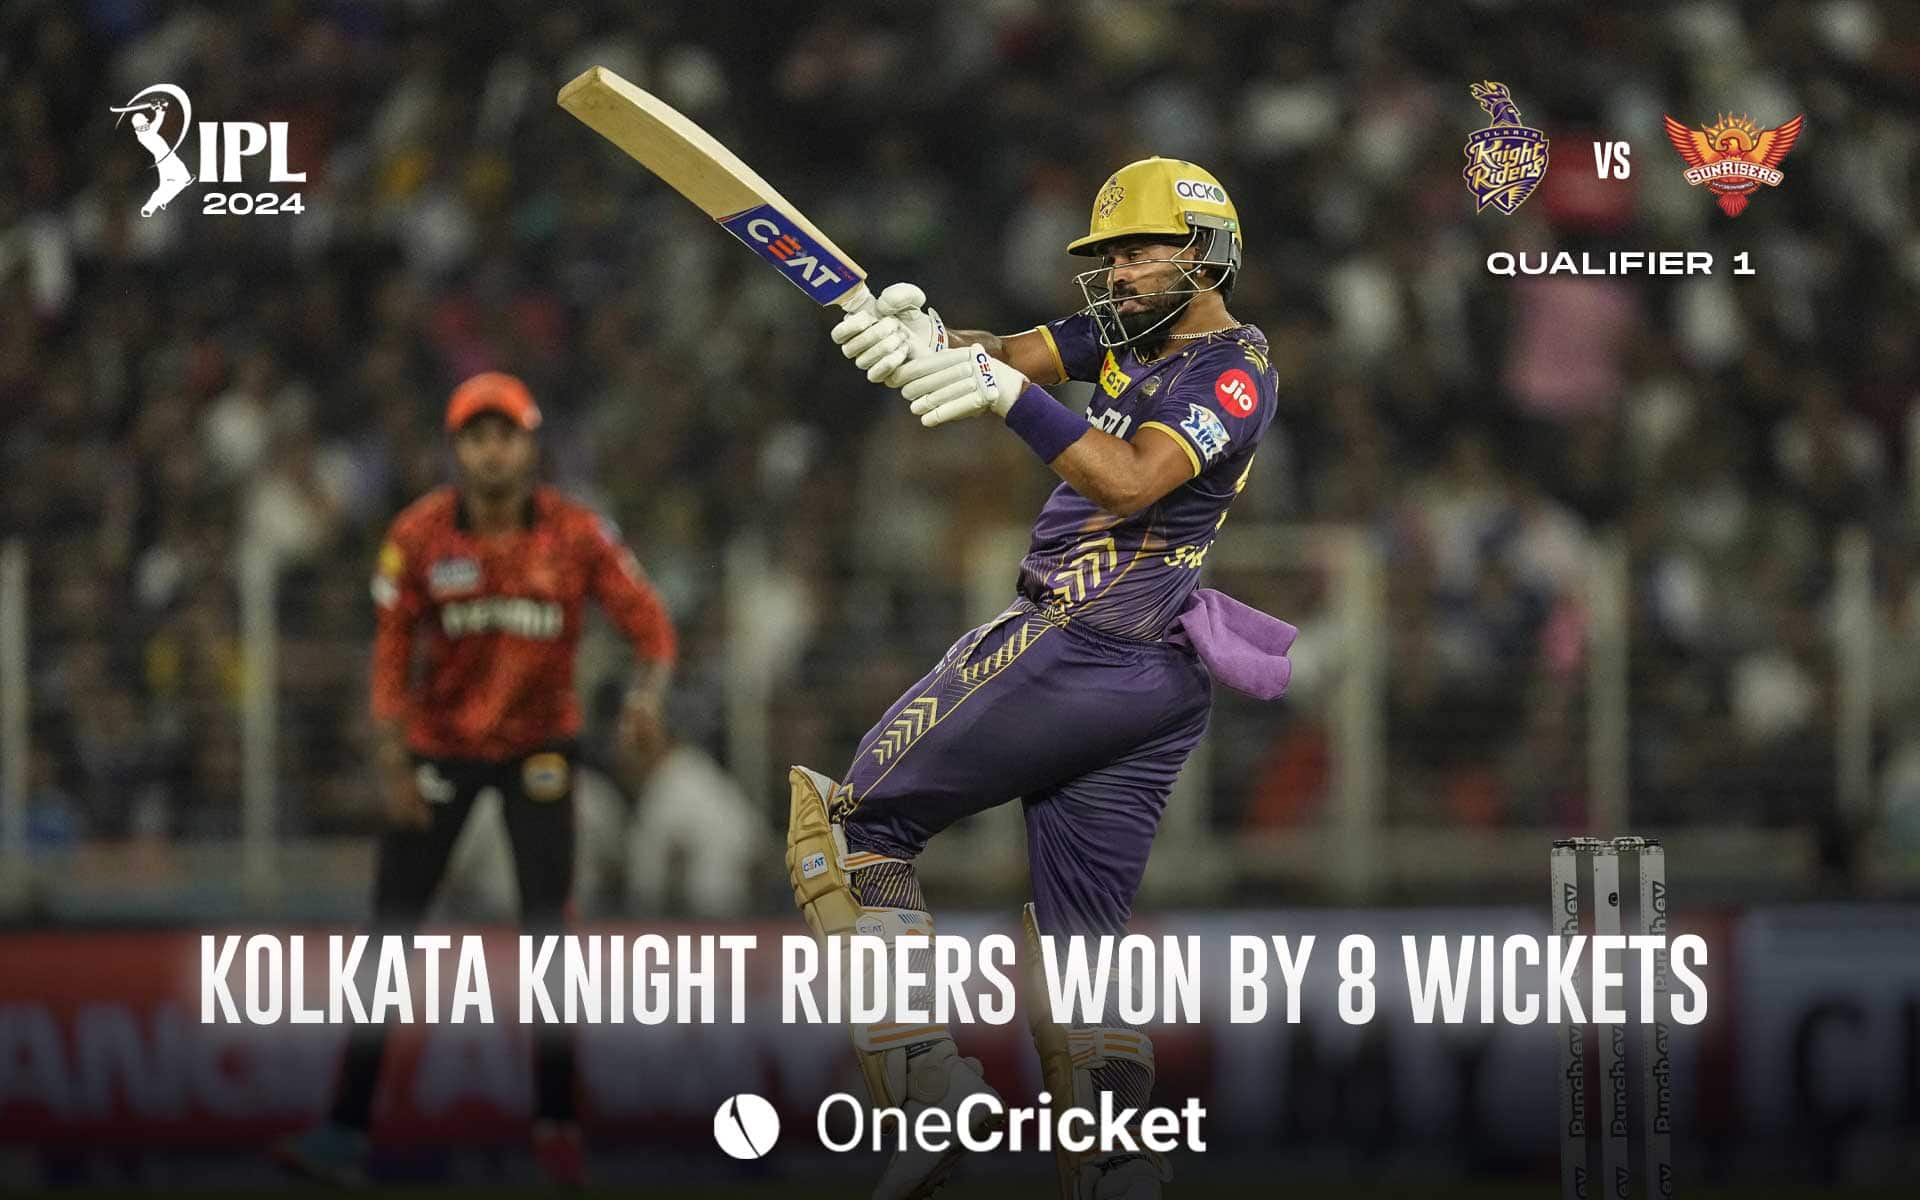 KKR win by 8 wickets 
